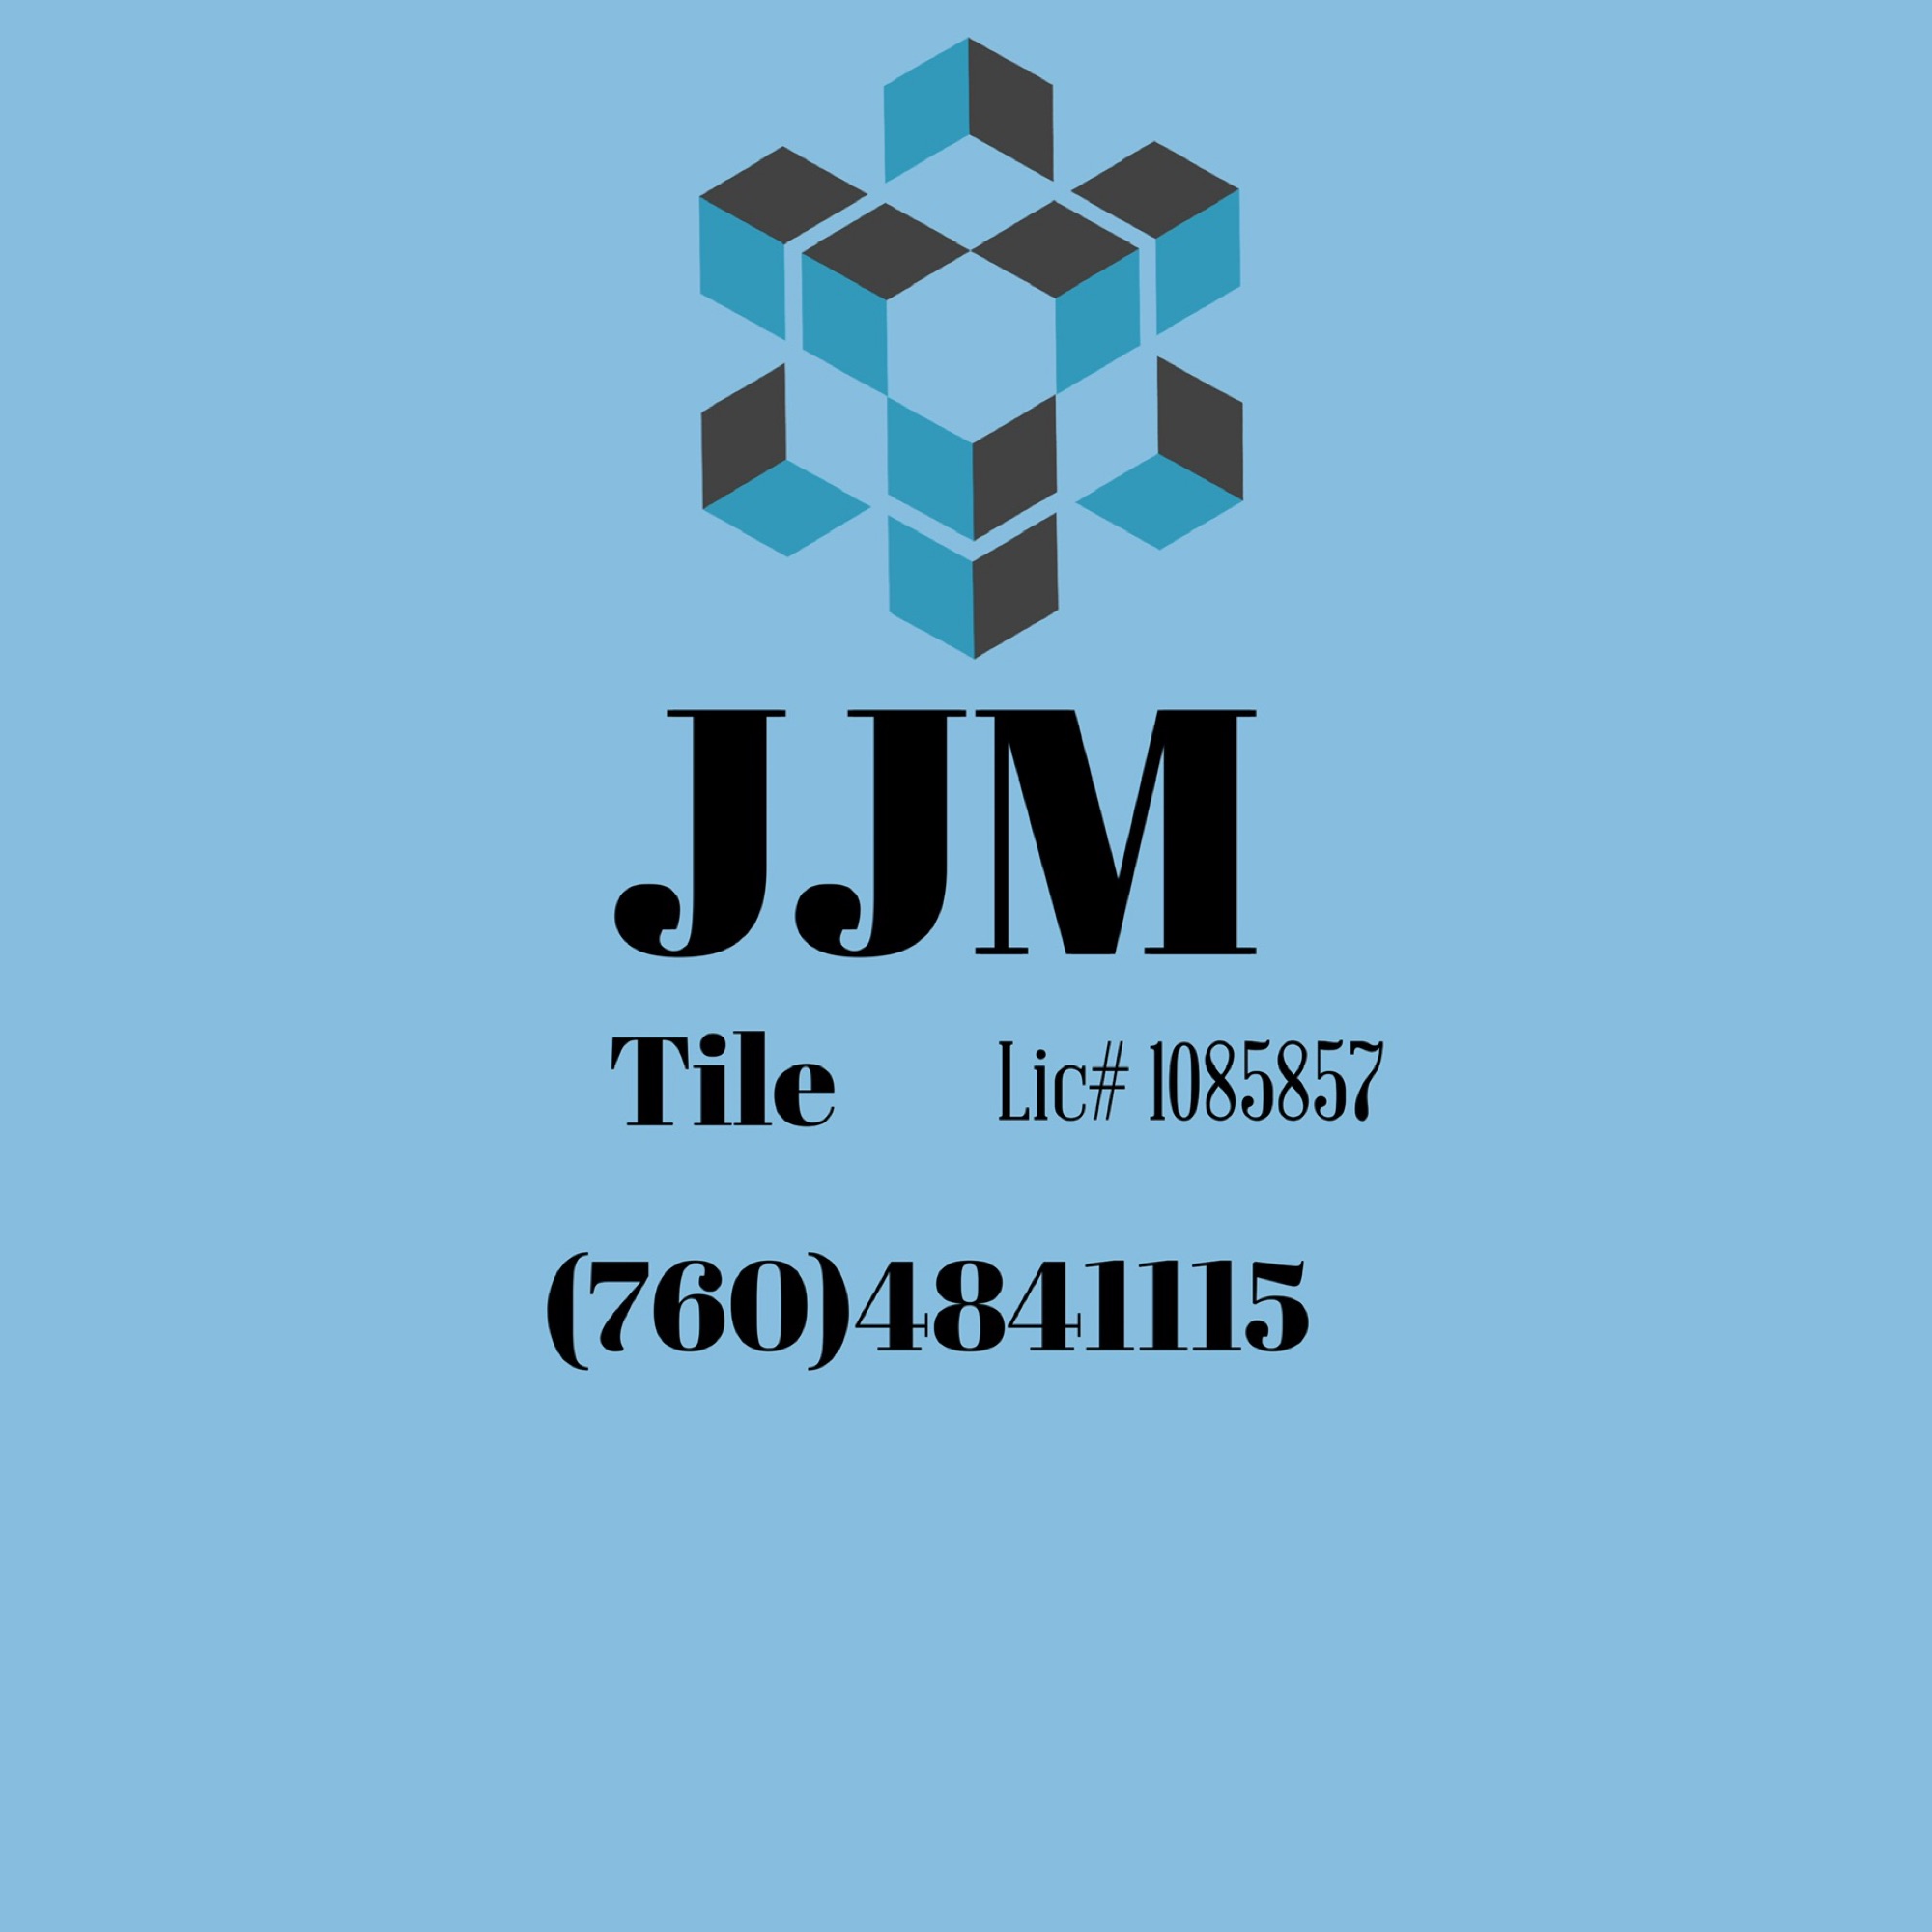 JJM Logo